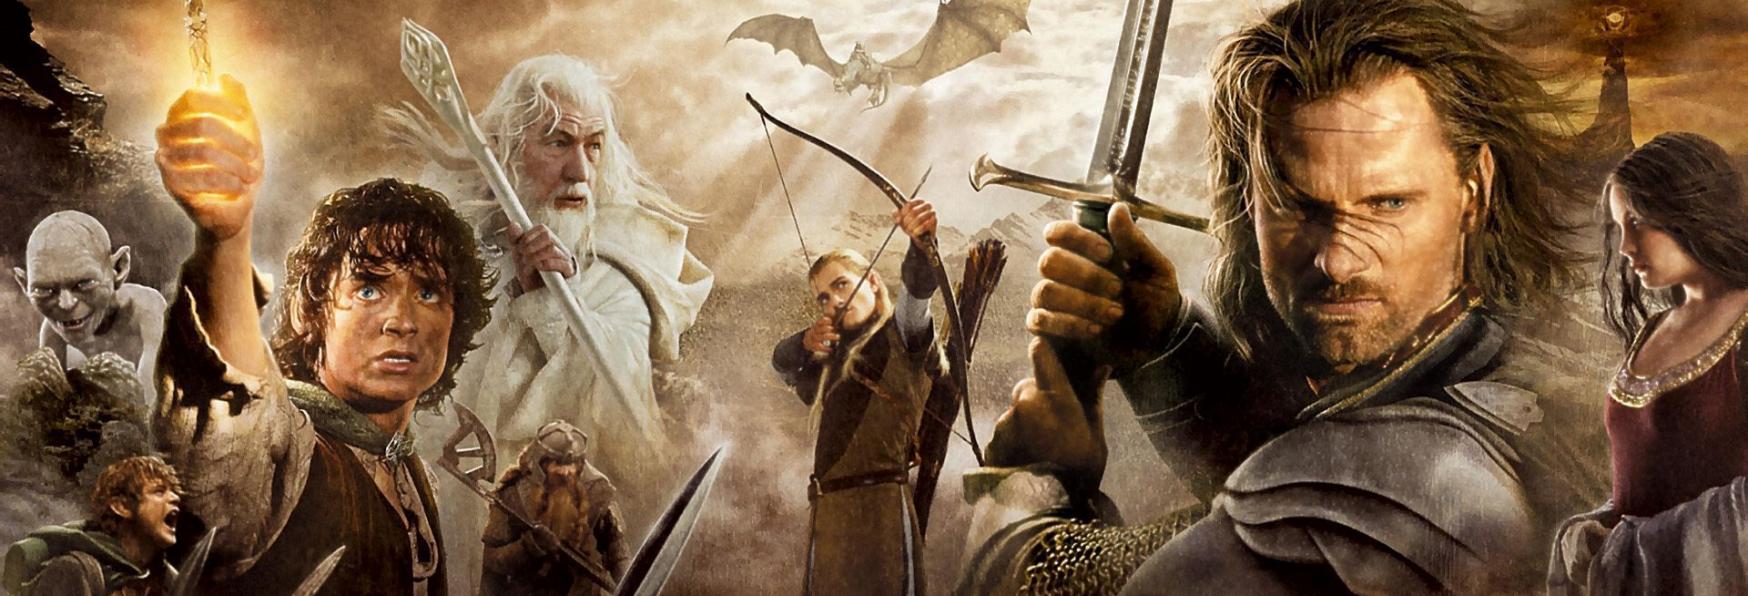 Il Signore degli Anelli: Gli Anelli del Potere - lo Showrunner sull'inserimento degli Hobbit nella Serie TV